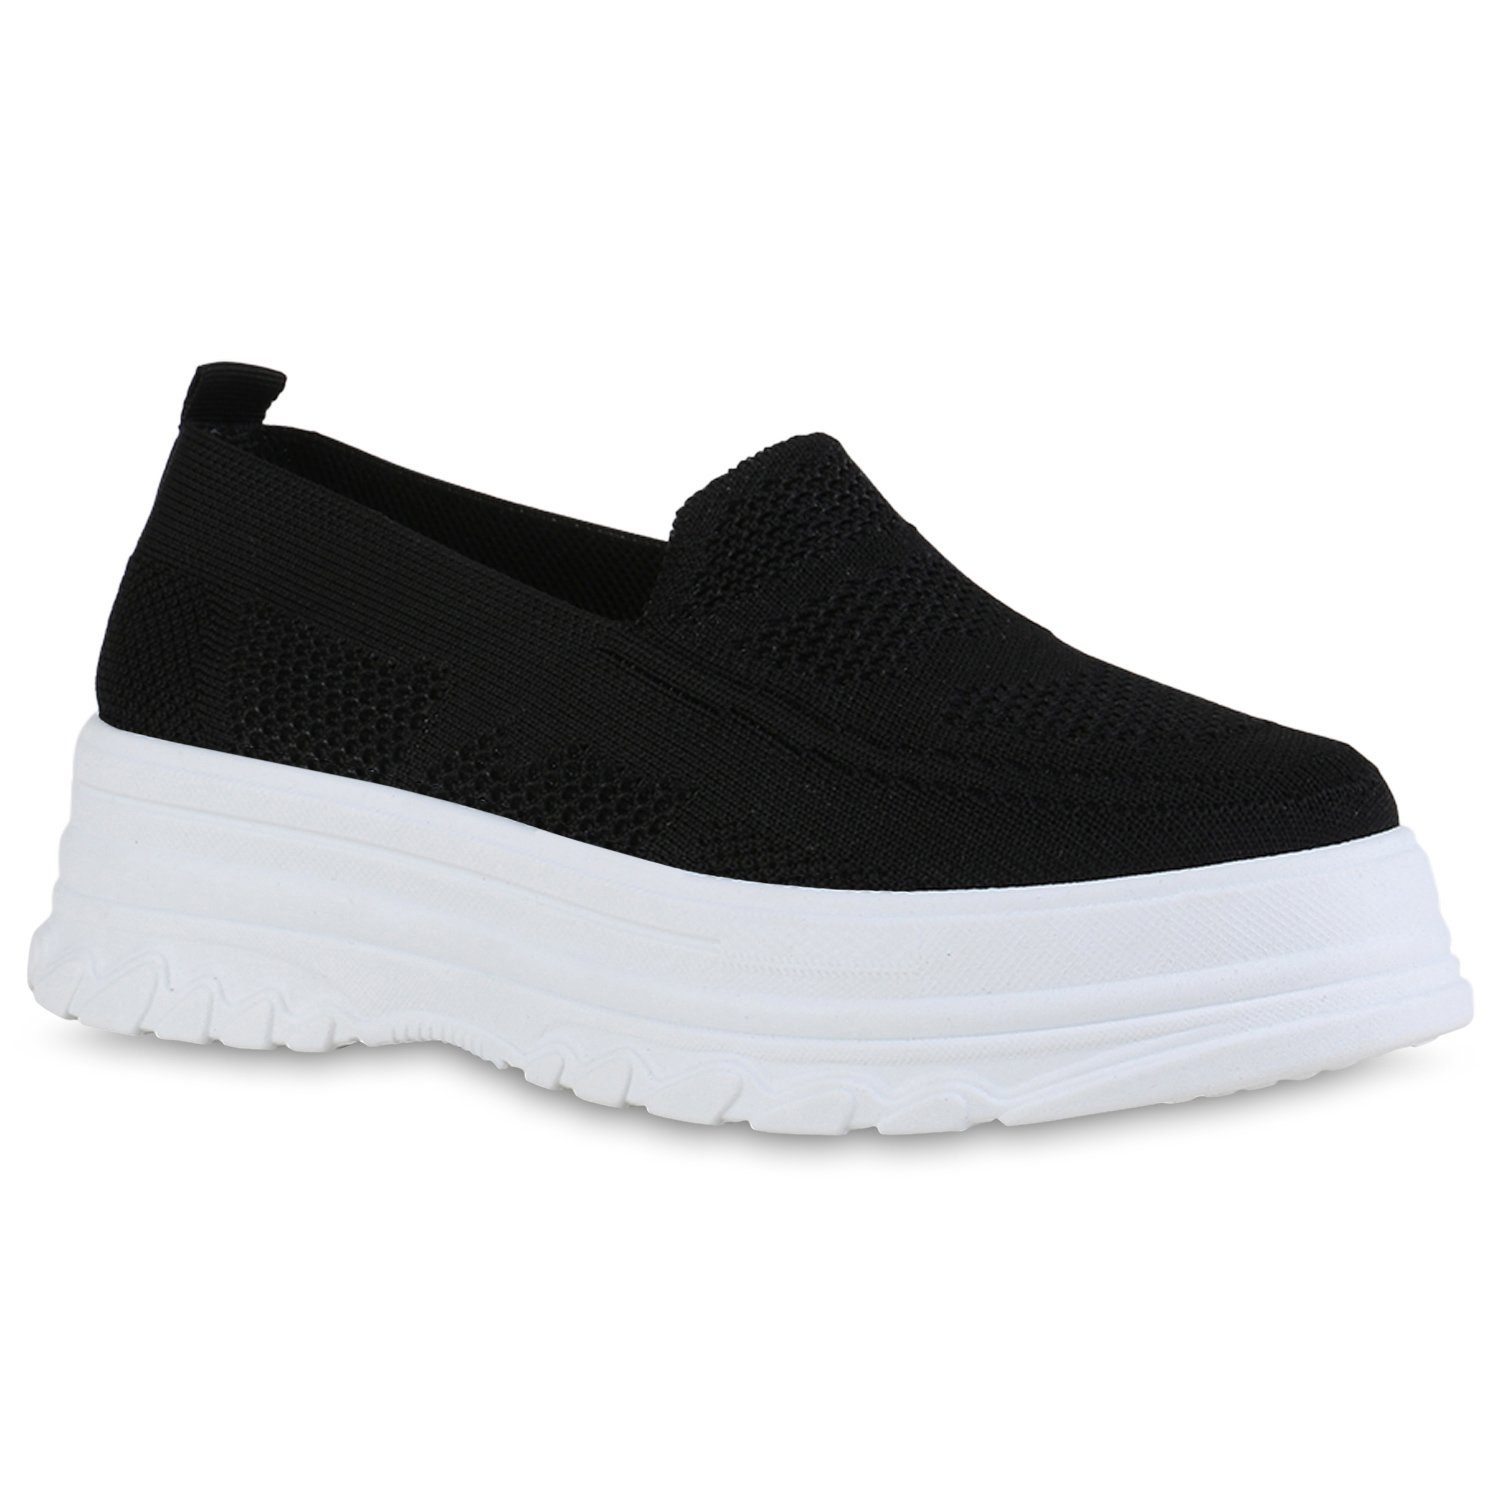 VAN HILL 840405 Slip-On Sneaker Schuhe